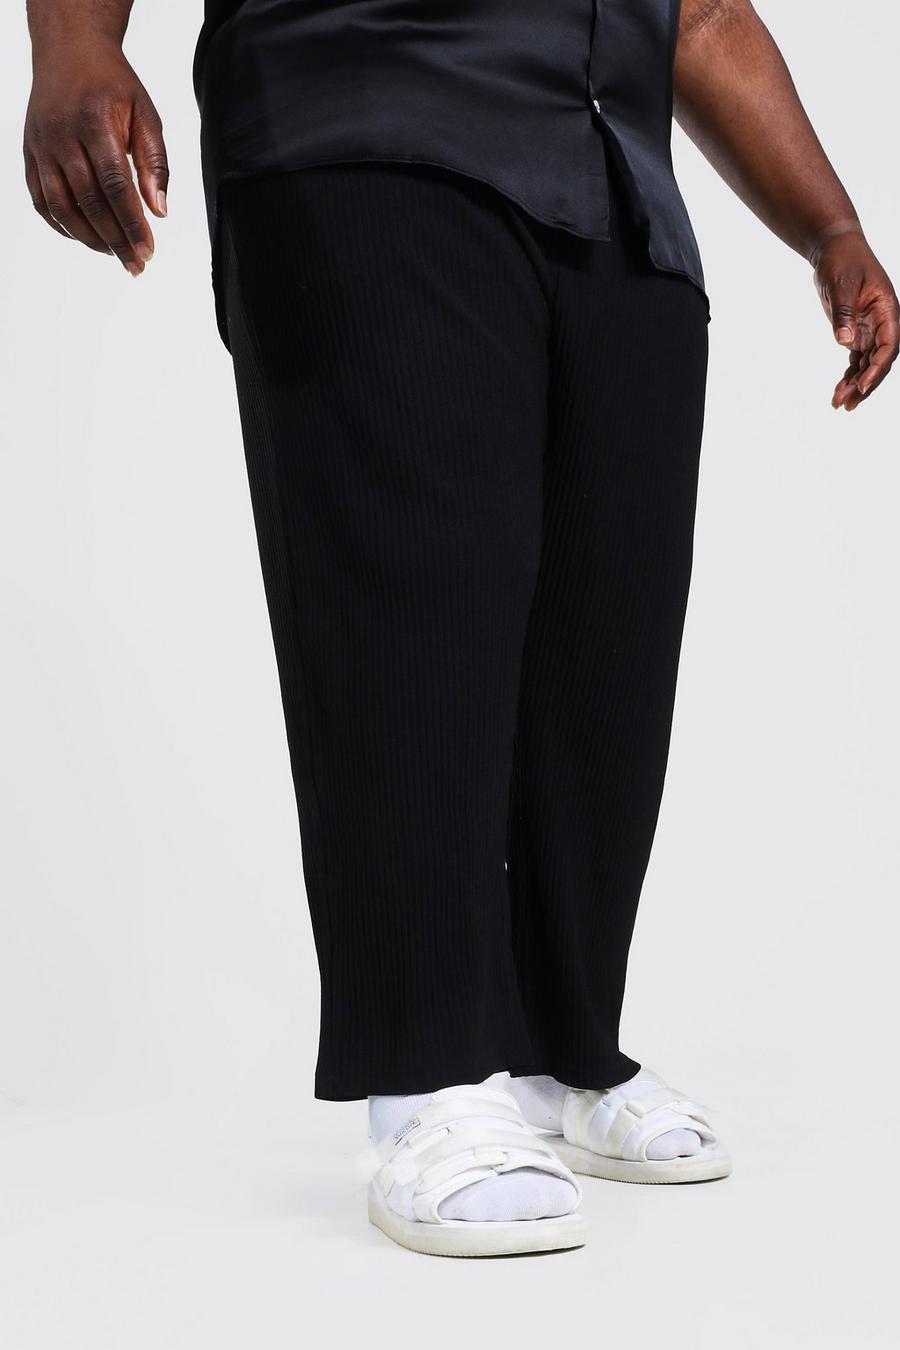 שחור מכנסי קרופ בגזרה צרה עם קפלים, למידות גדולות image number 1